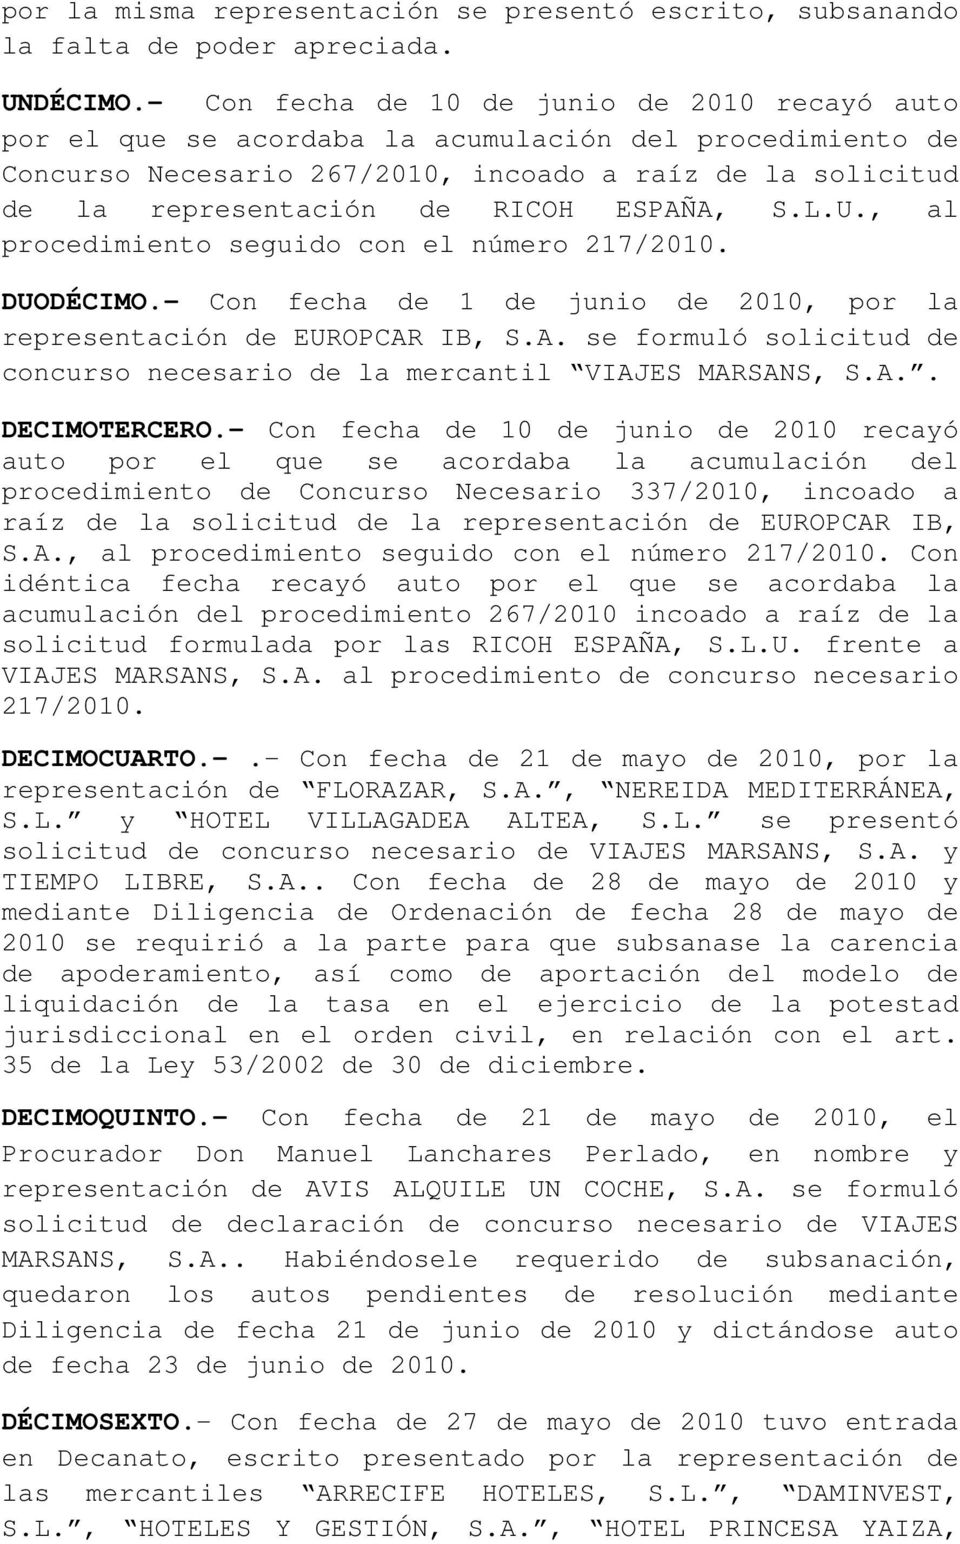 ESPAÑA, S.L.U., al procedimiento seguido con el número 217/2010. DUODÉCIMO.- Con fecha de 1 de junio de 2010, por la representación de EUROPCAR IB, S.A. se formuló solicitud de concurso necesario de la mercantil VIAJES MARSANS, S.